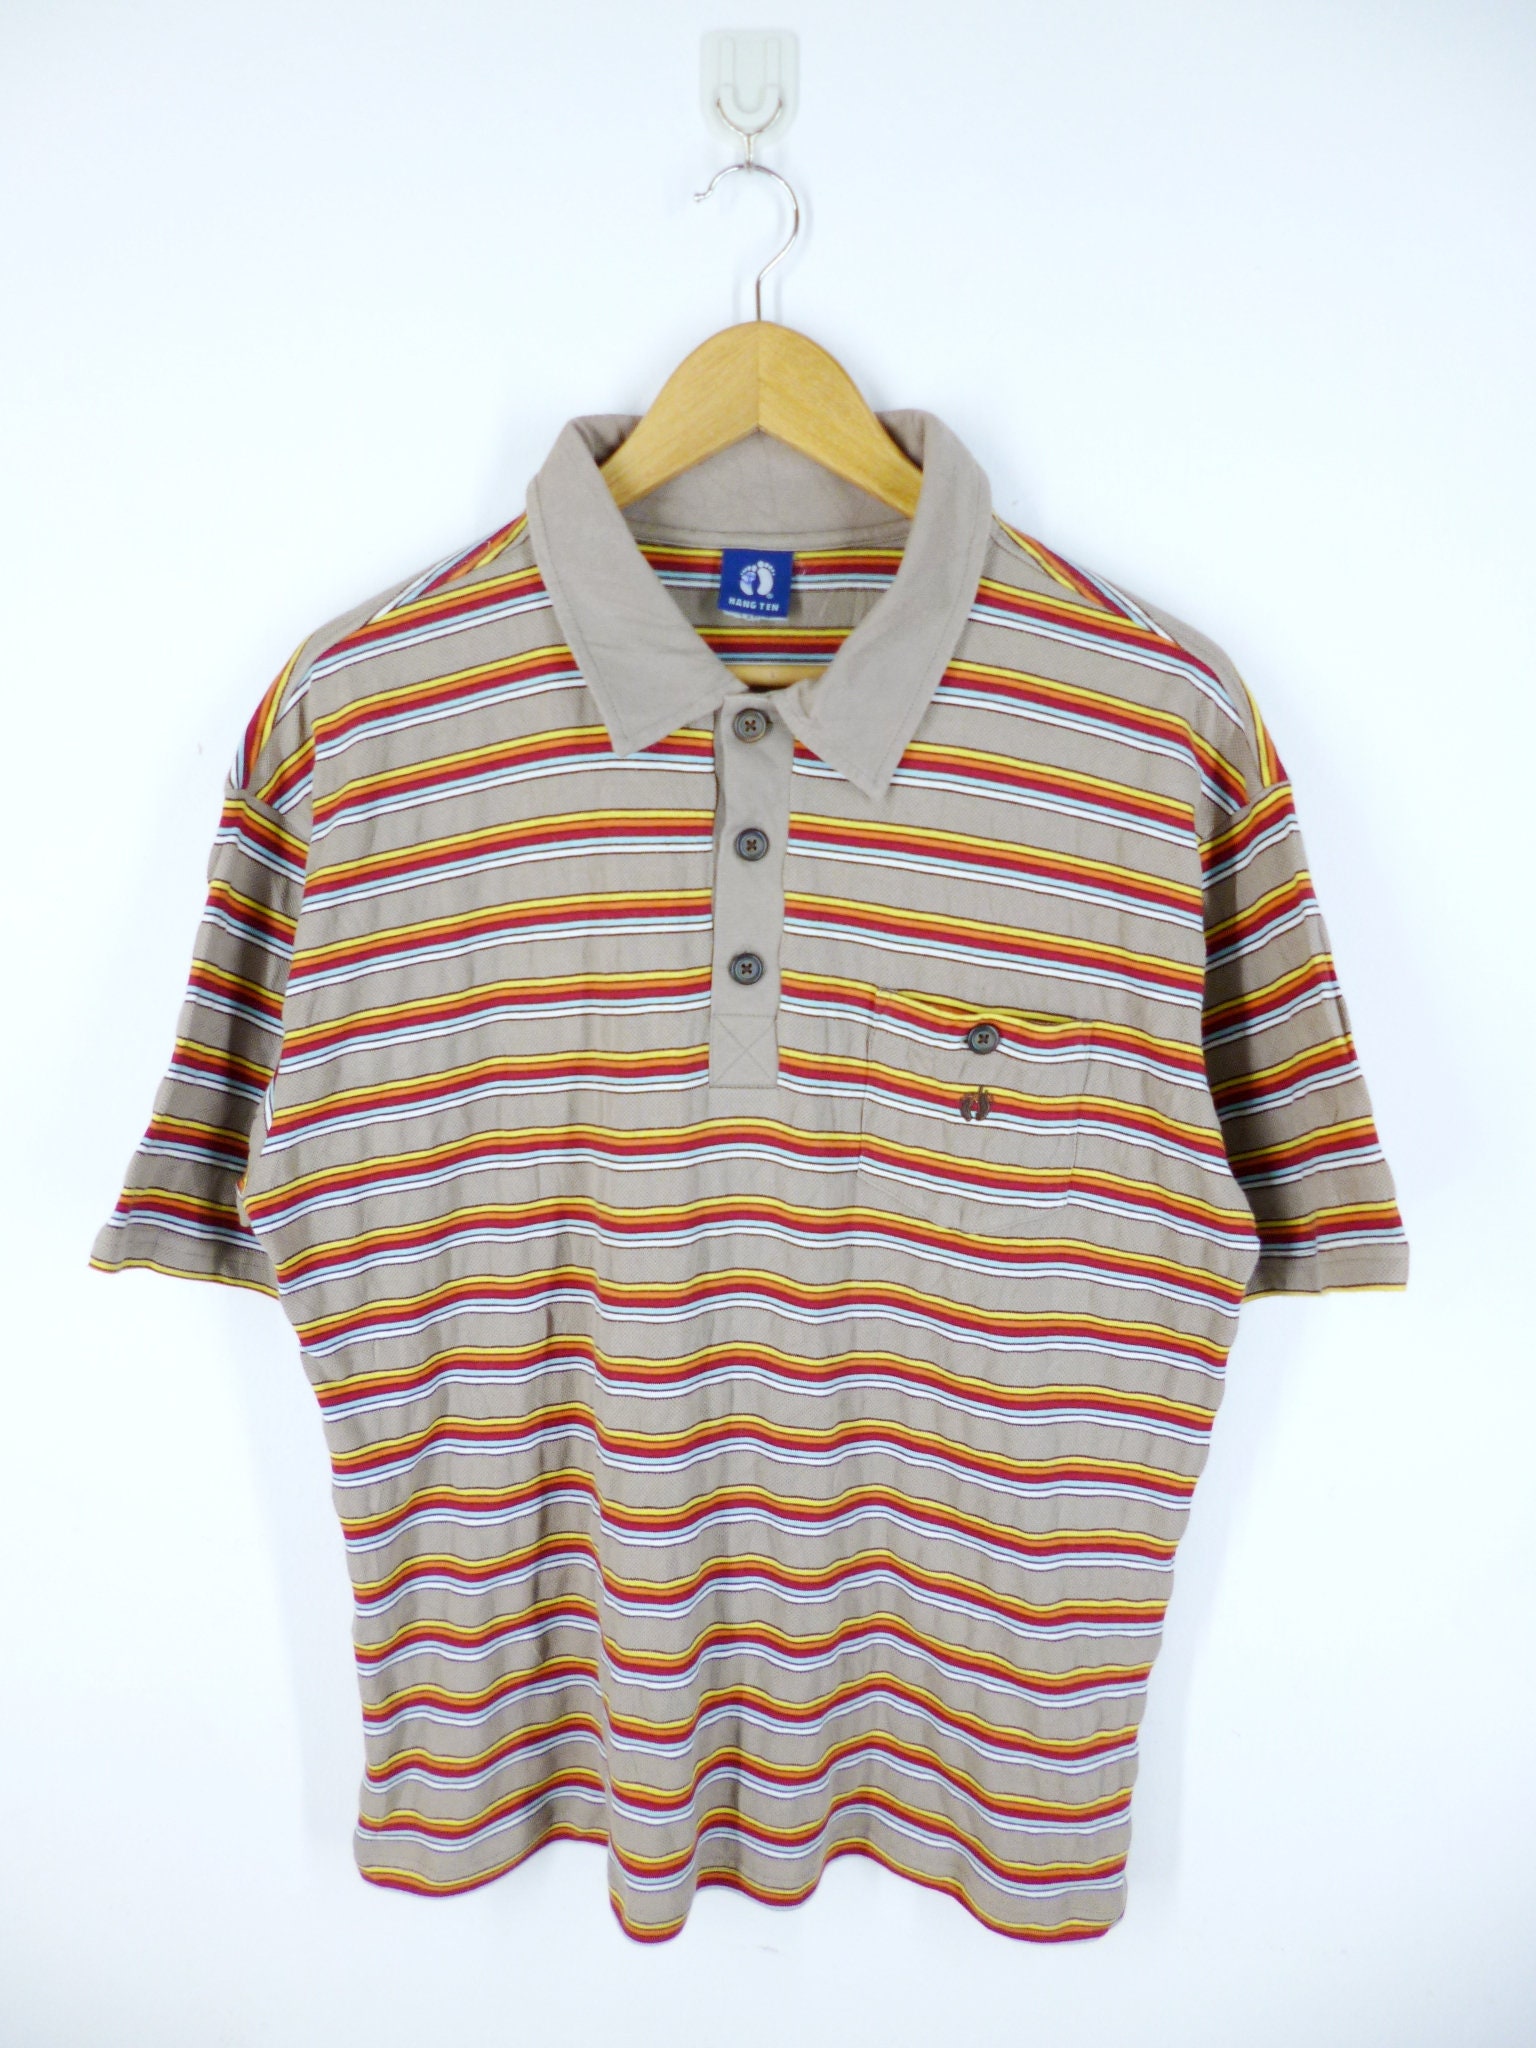 Hang Ten Shirt Vintage Hang Ten Polo Shirt Hang Ten Striped | Etsy